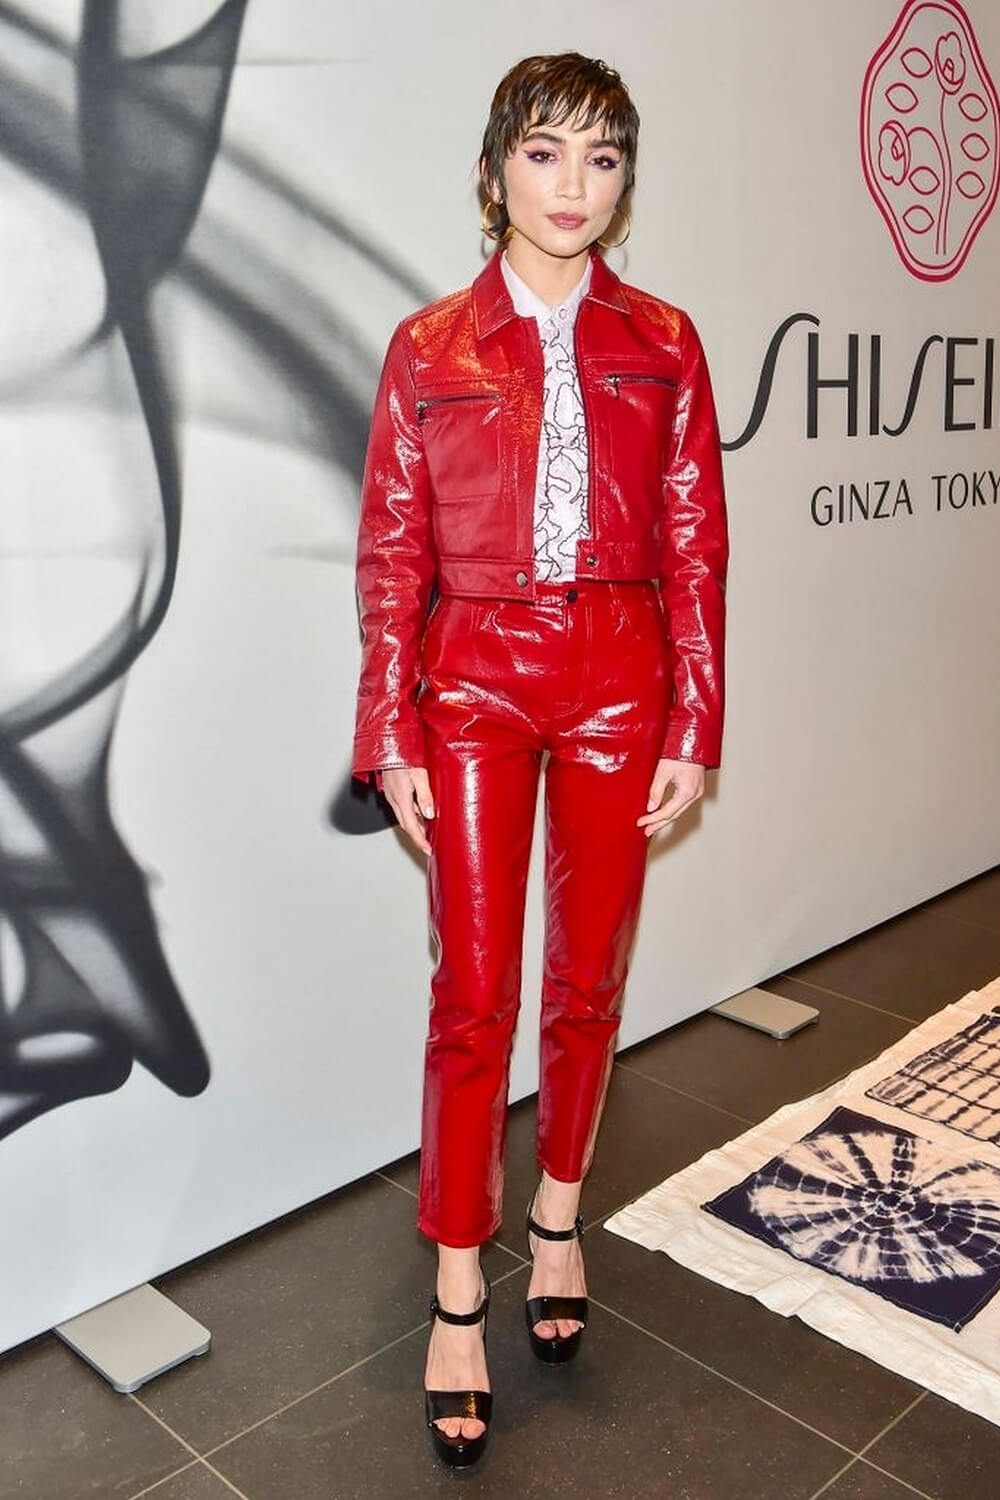 Rowan Blanchard attends Shiseido makeup launch